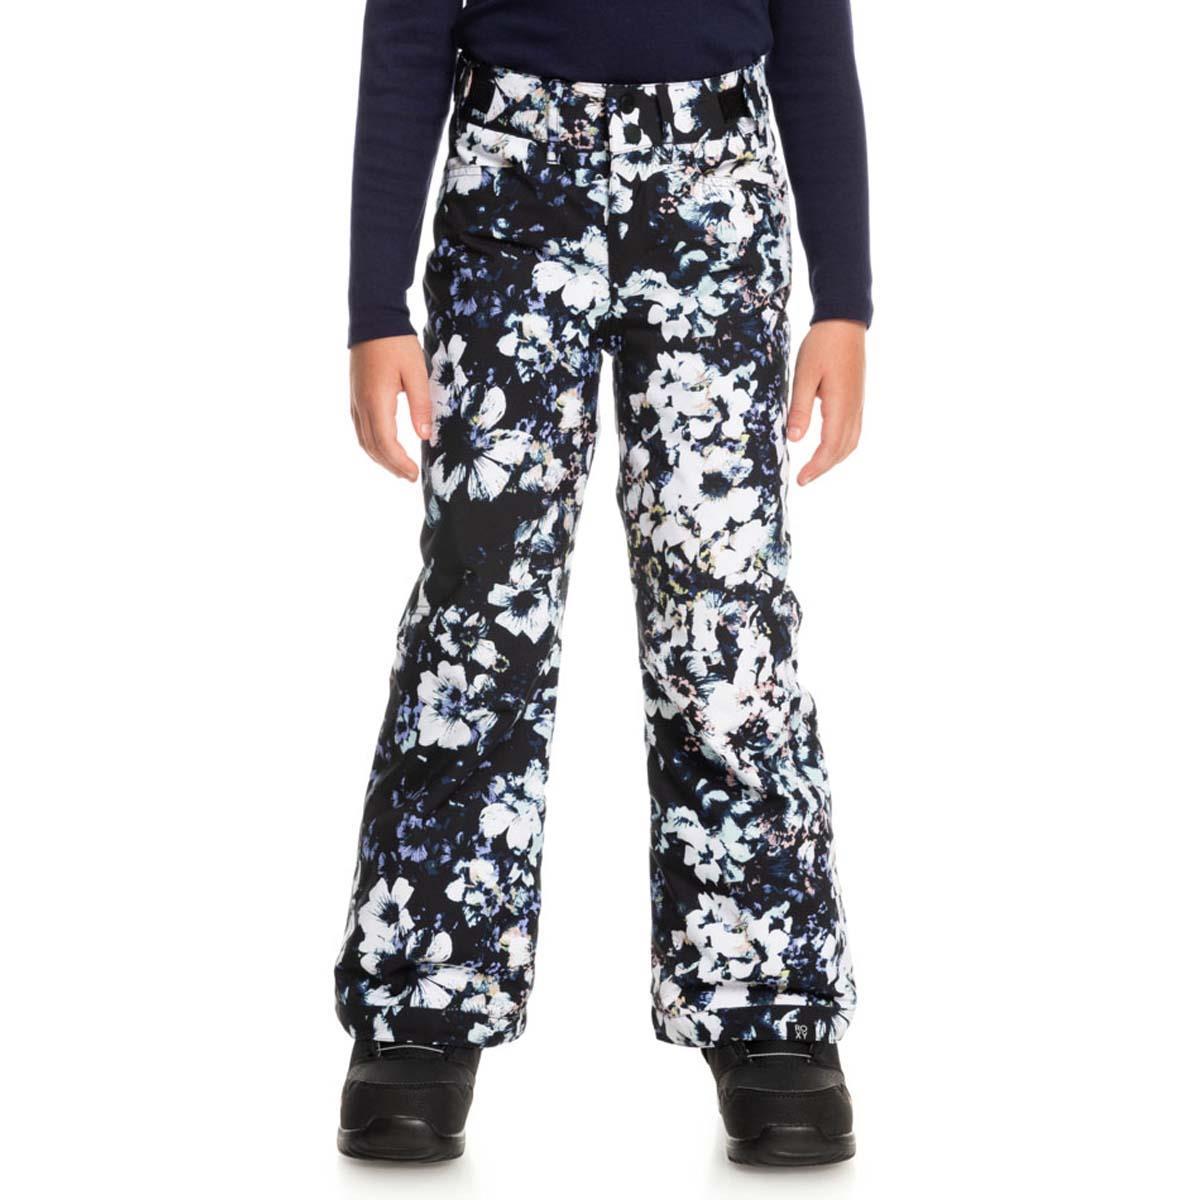 Roxy Backyard Pant - Ski trousers Women's